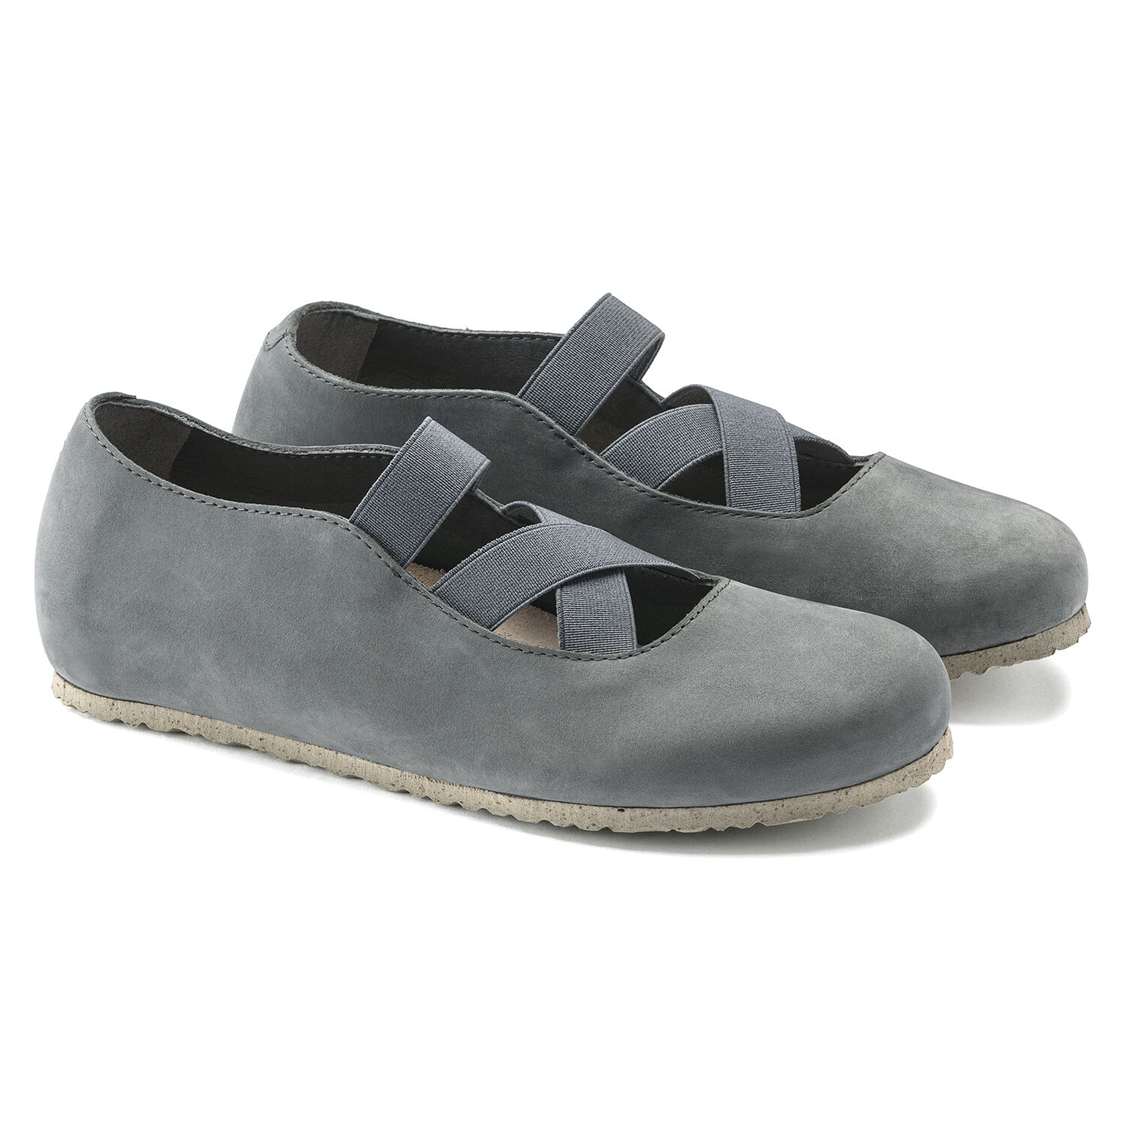 Grey Birkenstock Santa Ana Nubuck Leather Women's Low Shoes | 5Qt7YkT9zeJ